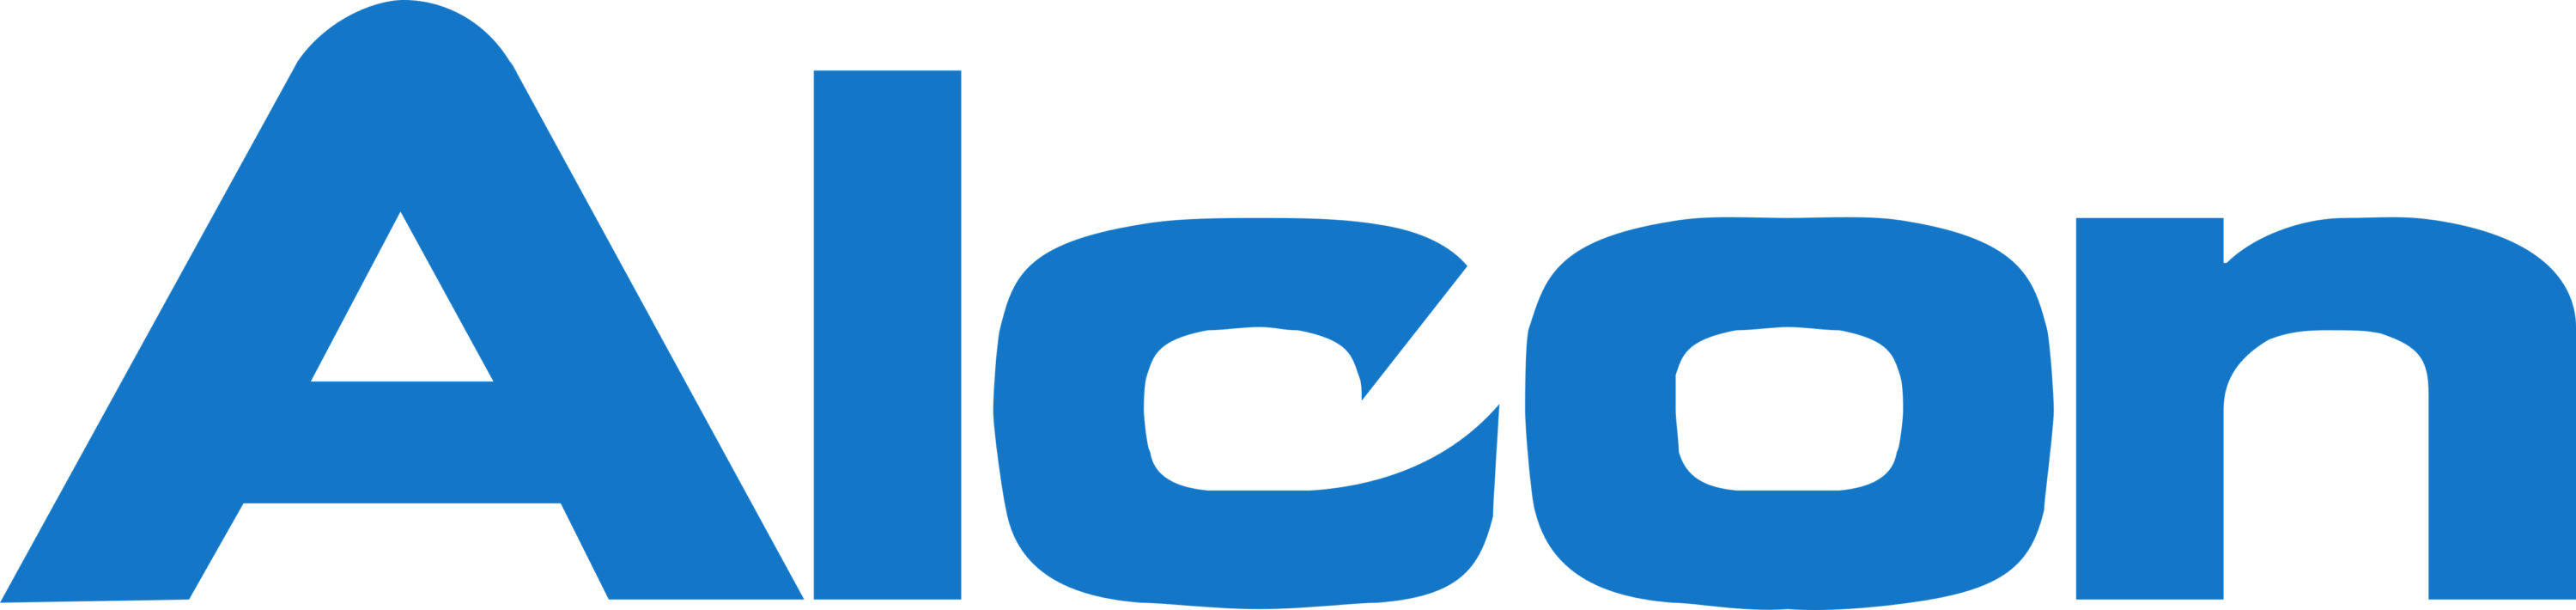 Alcon Logo old